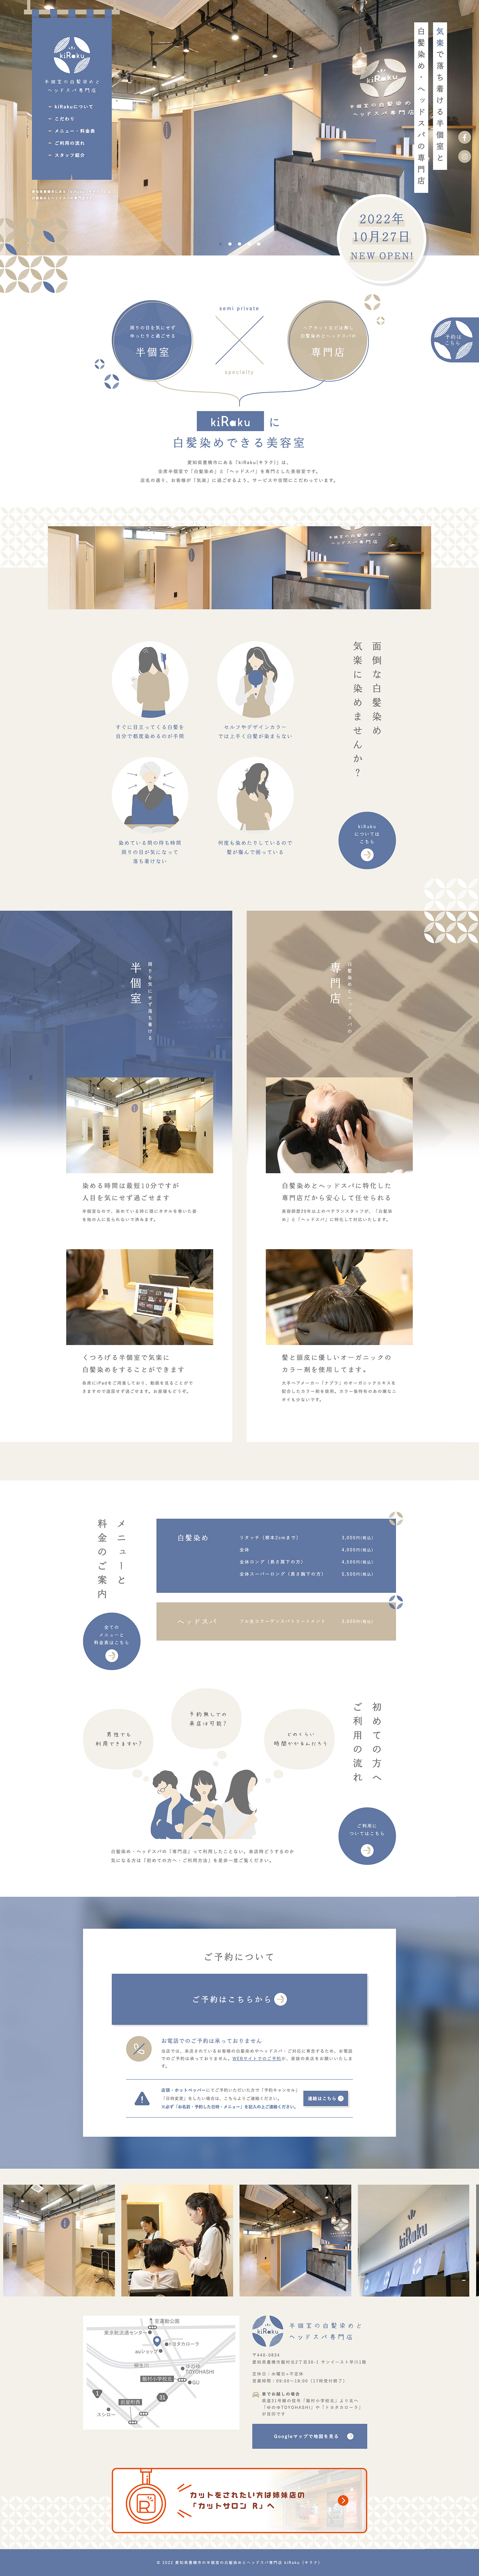 白髪染め・ヘッドスパ専門店のホームページデザイン